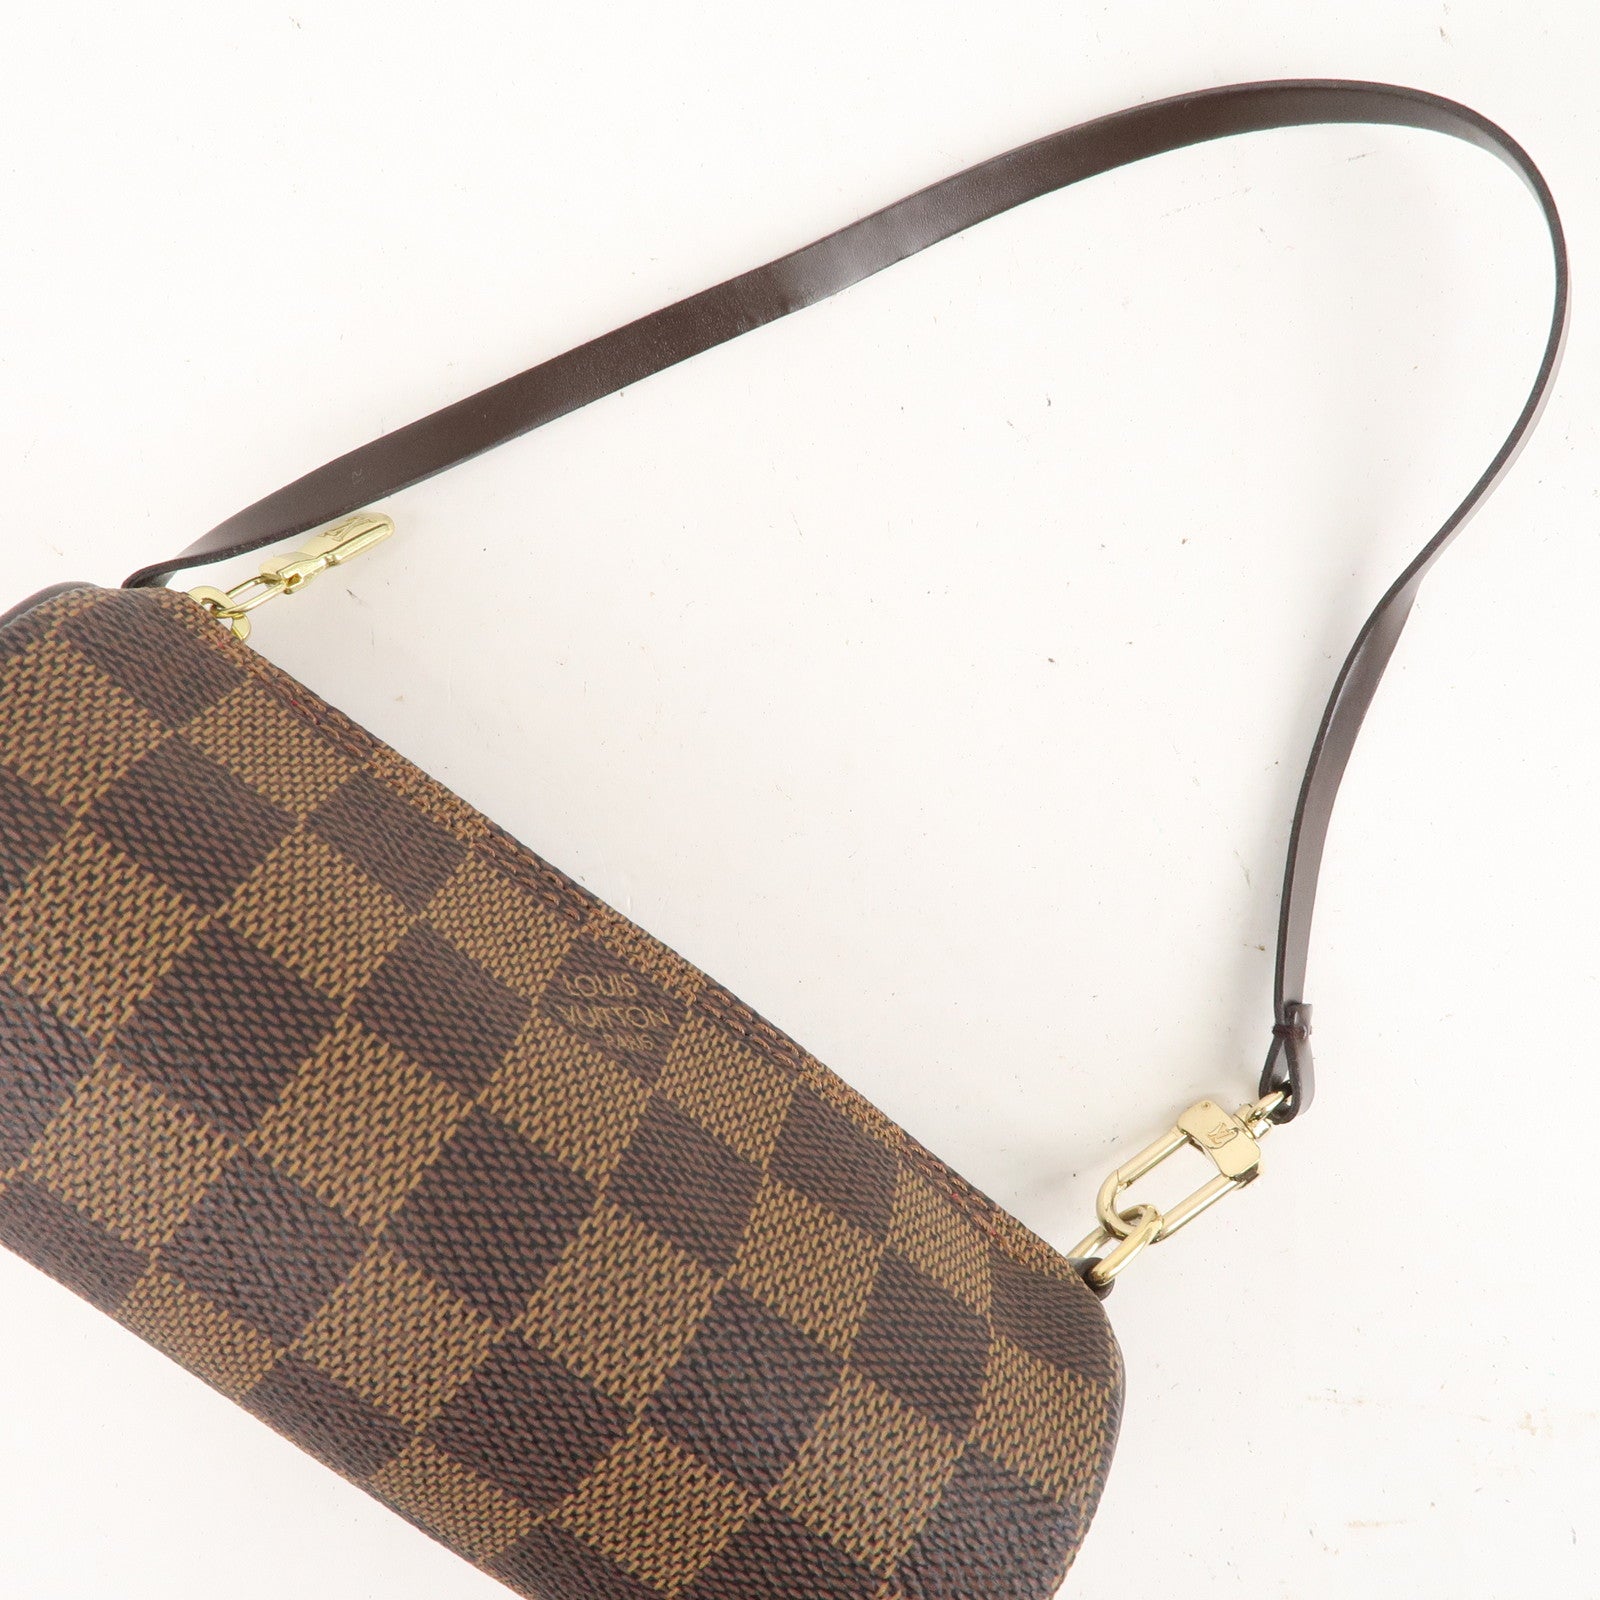 Unboxing Louis Vuitton damier ebene mini papillon bag it's so cute